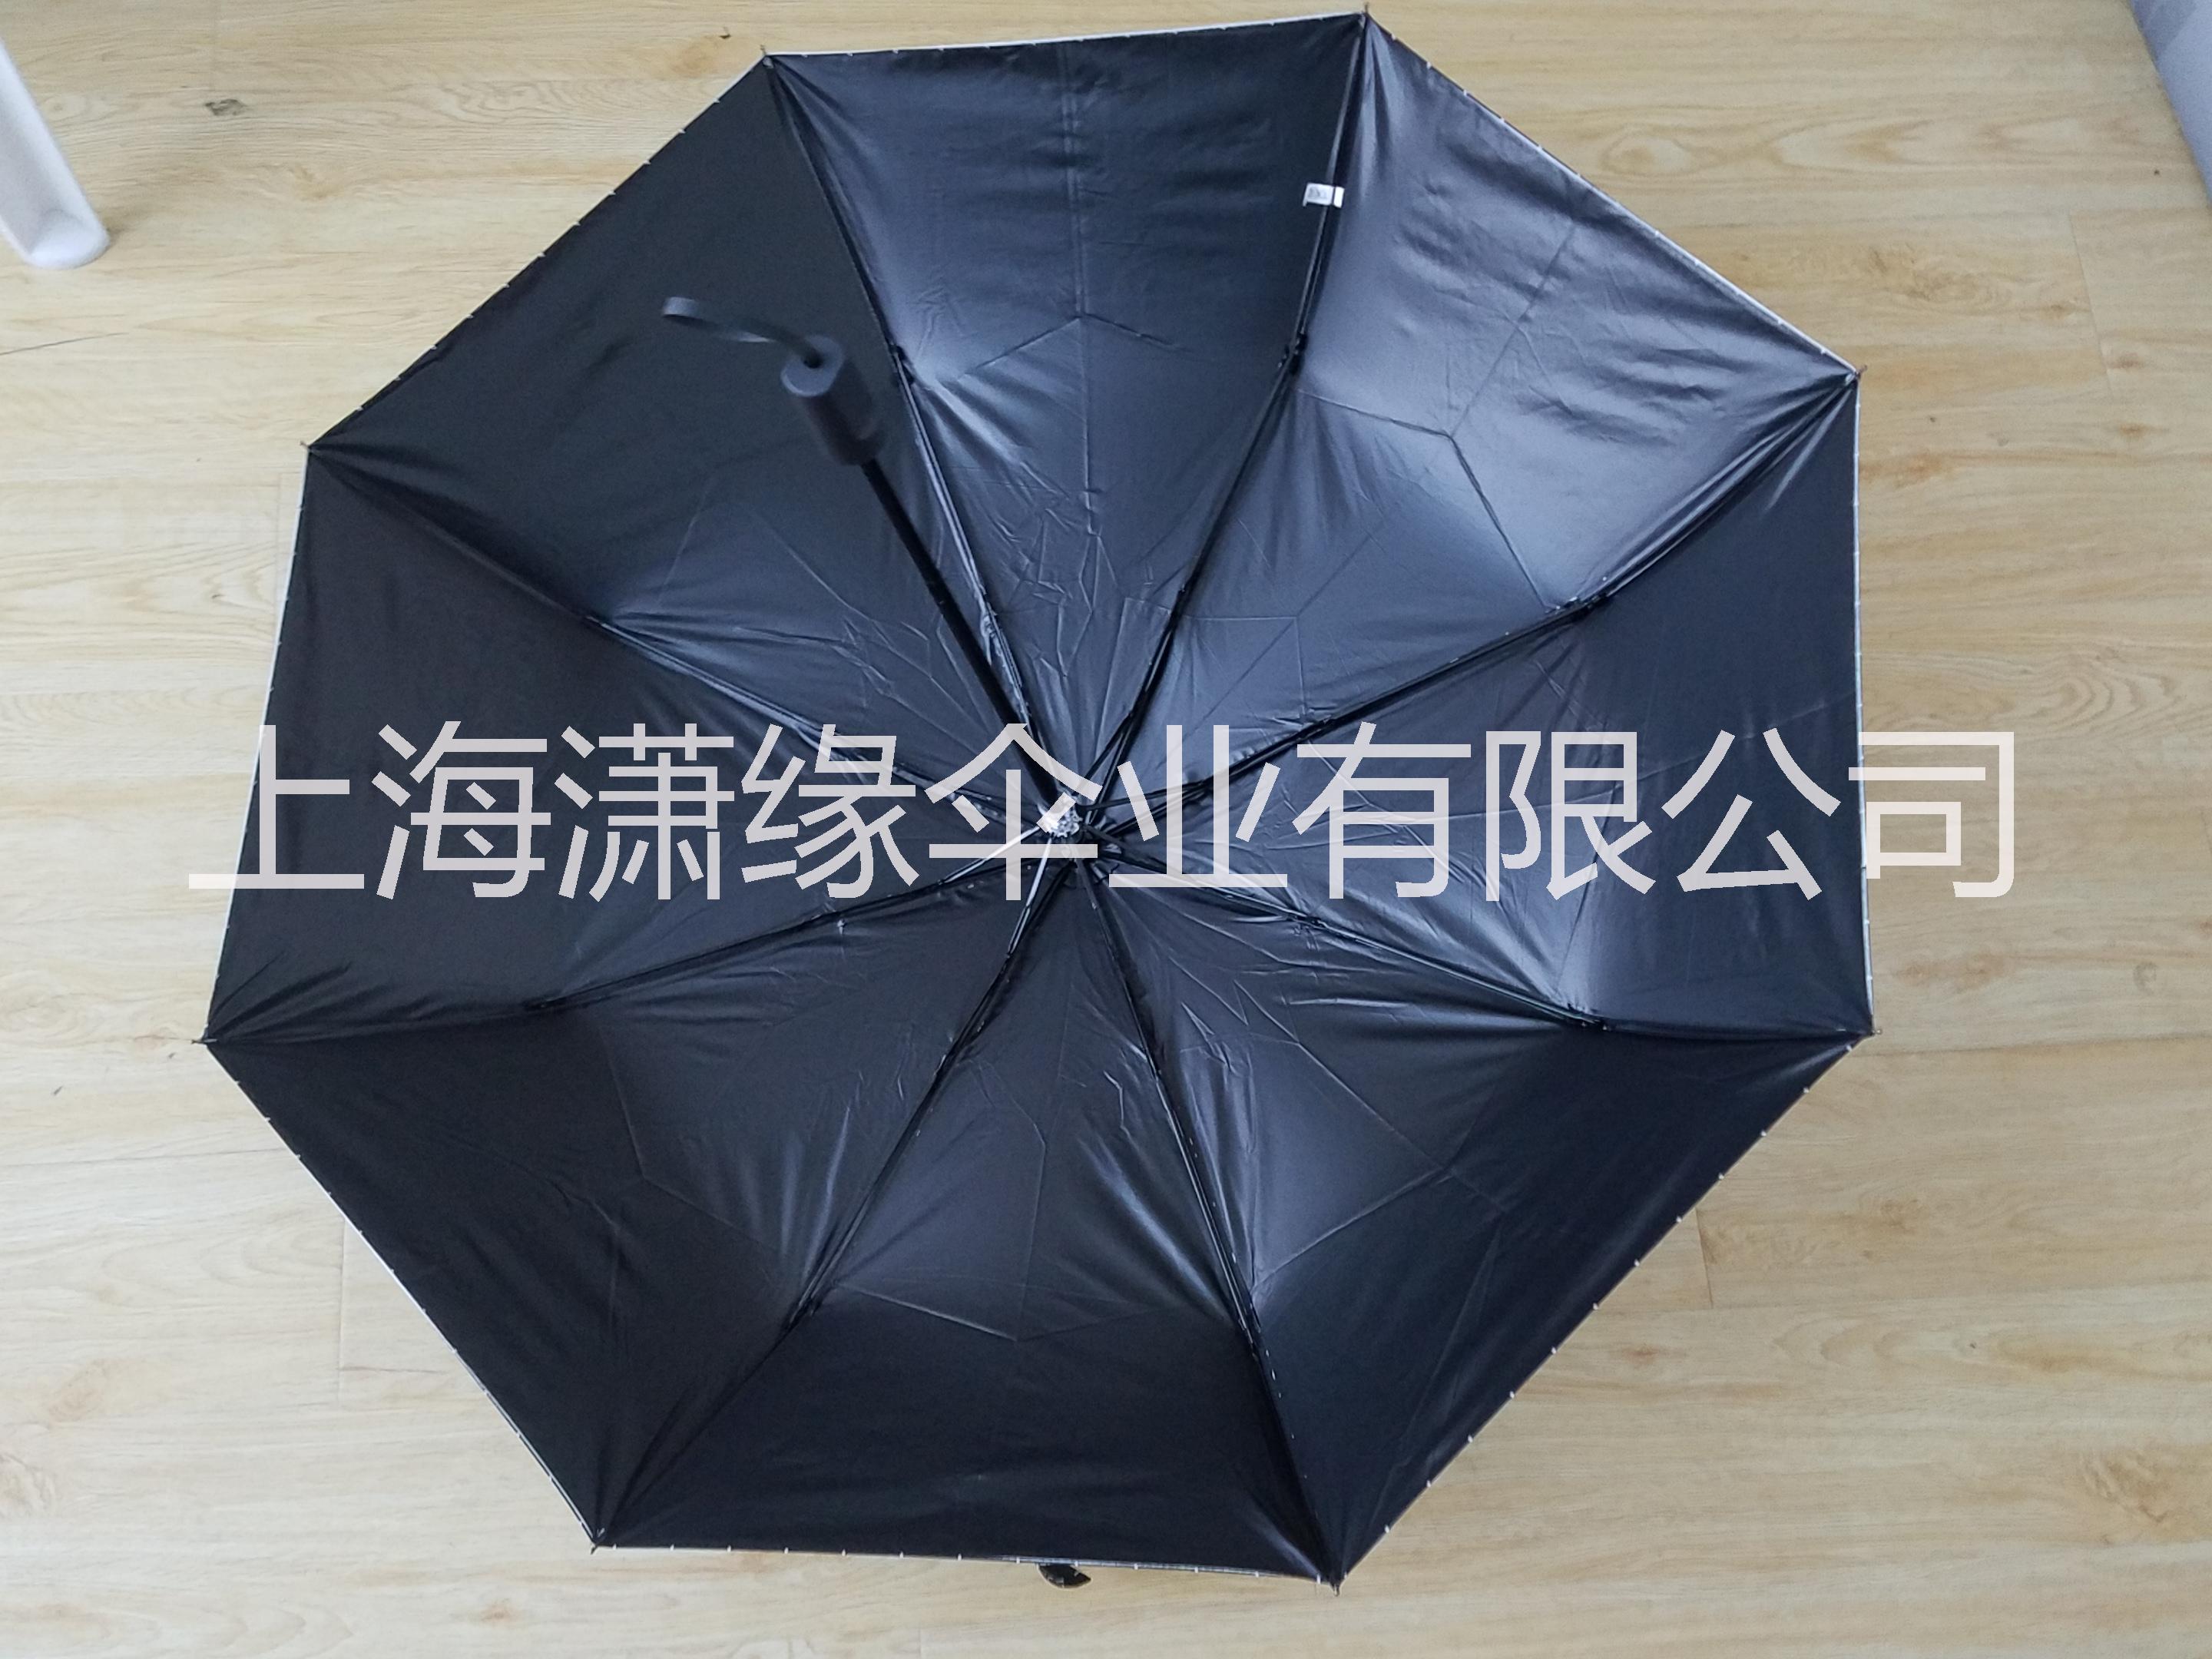 黑胶伞、黑胶布折叠遮阳伞、防UV女士遮阳伞图片